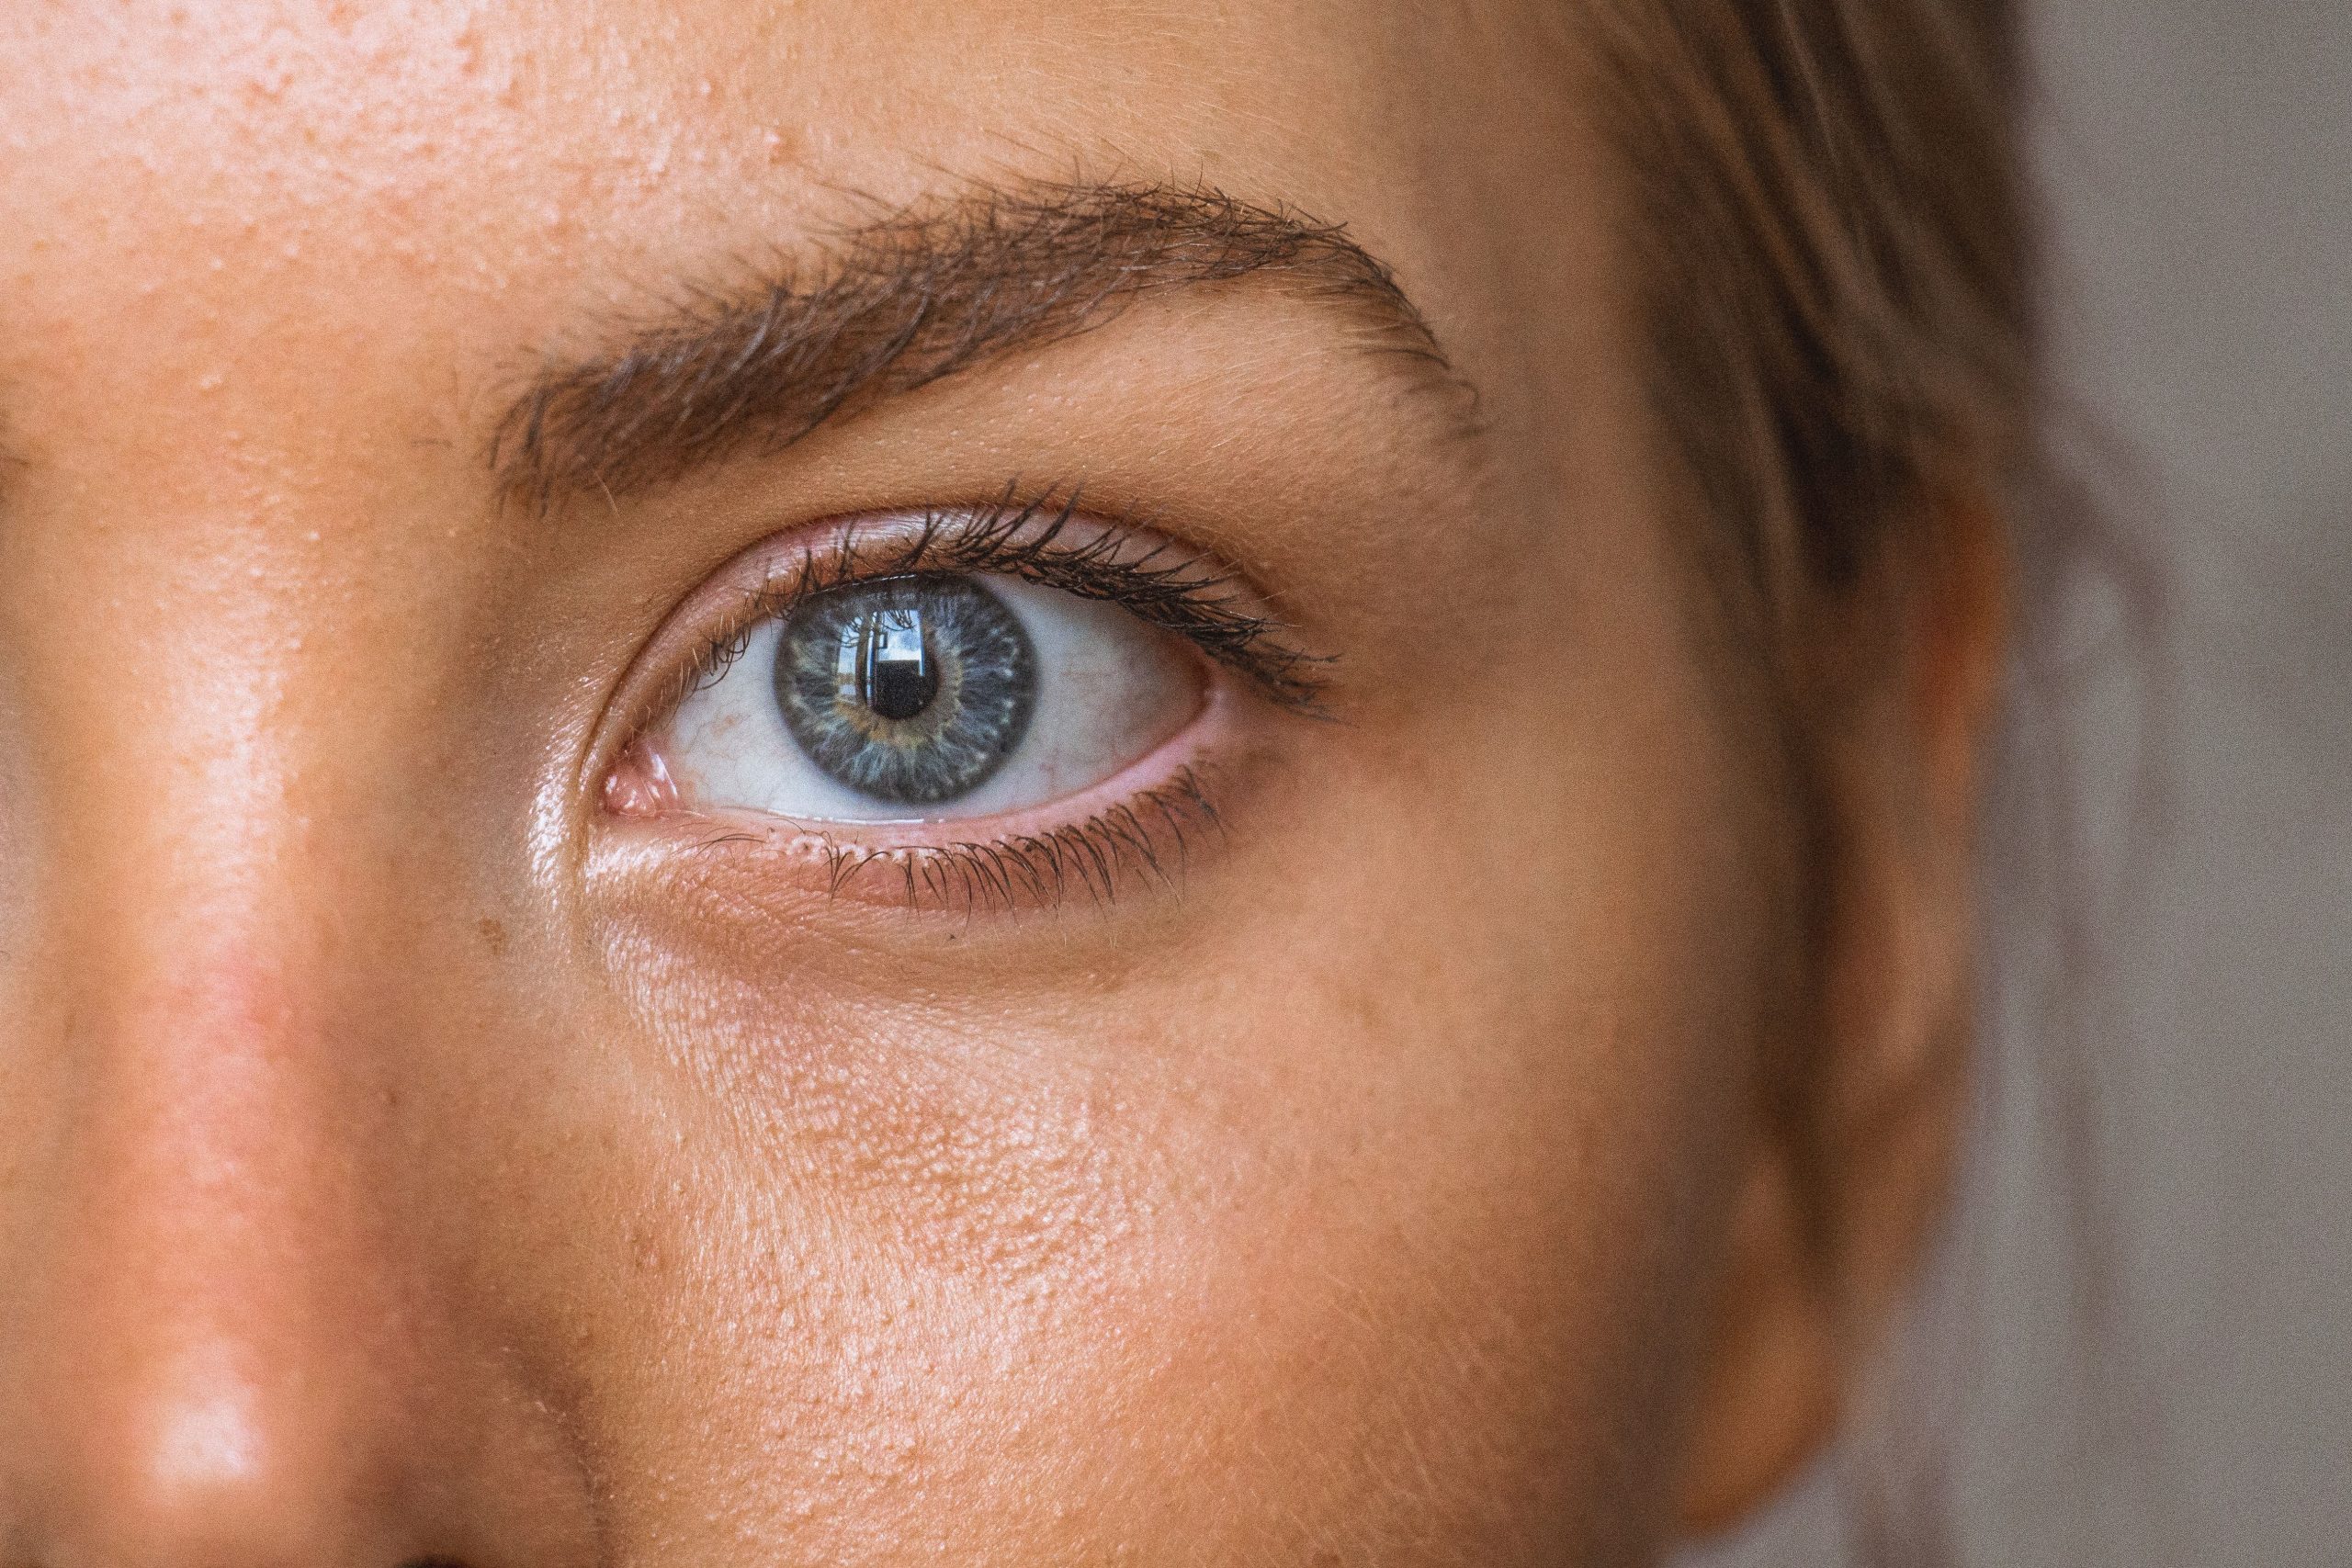 अगर आंखों की रोशनी होने लगी है कमजोर, तो इन विटामिन्स को डाइट में करें शामिल